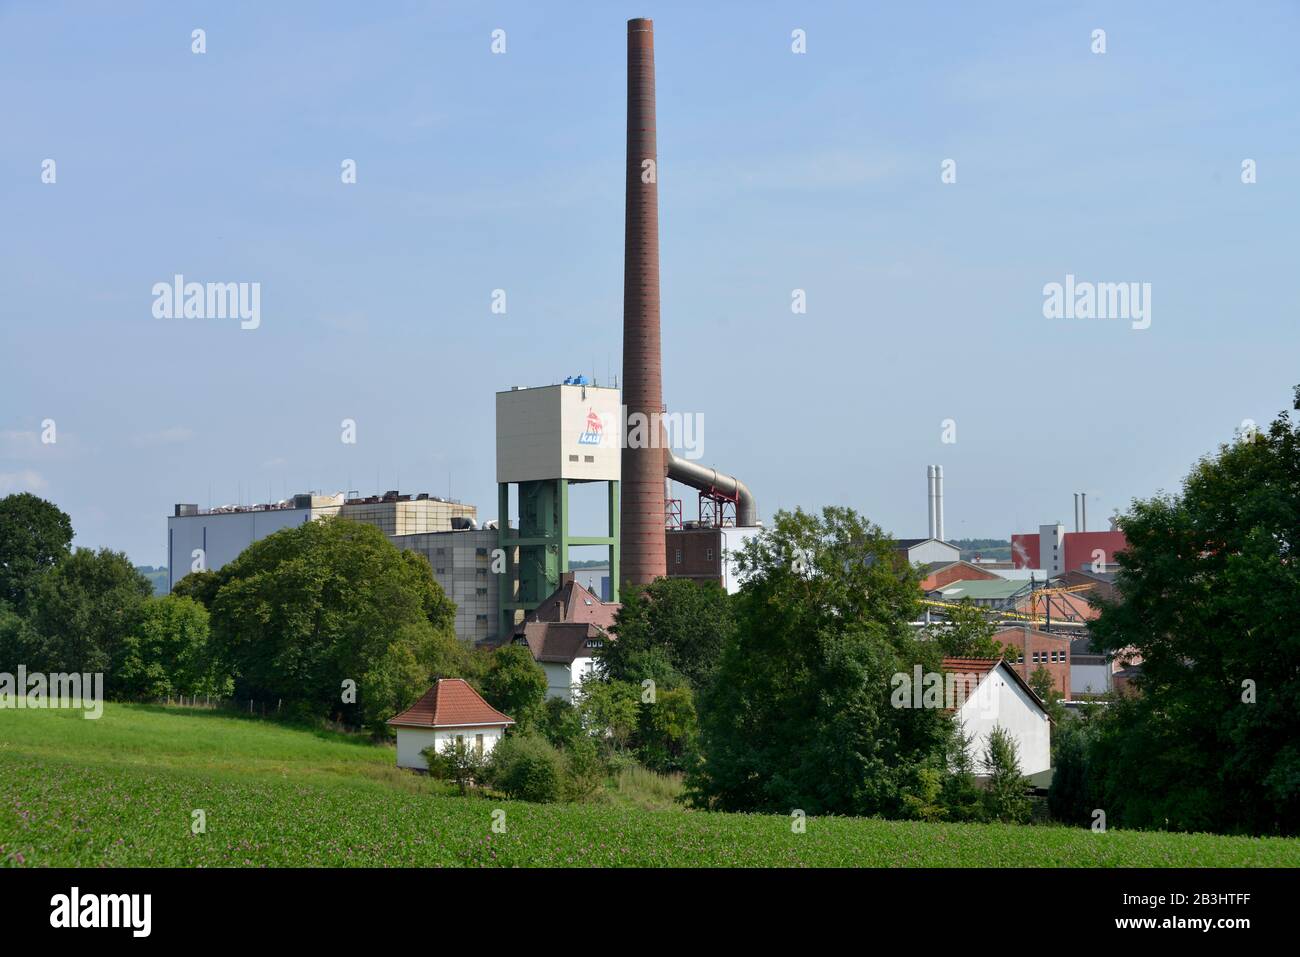 Kali und Salze, Werk Wintershall, Heringen, Hessen, Deutschland Stock Photo